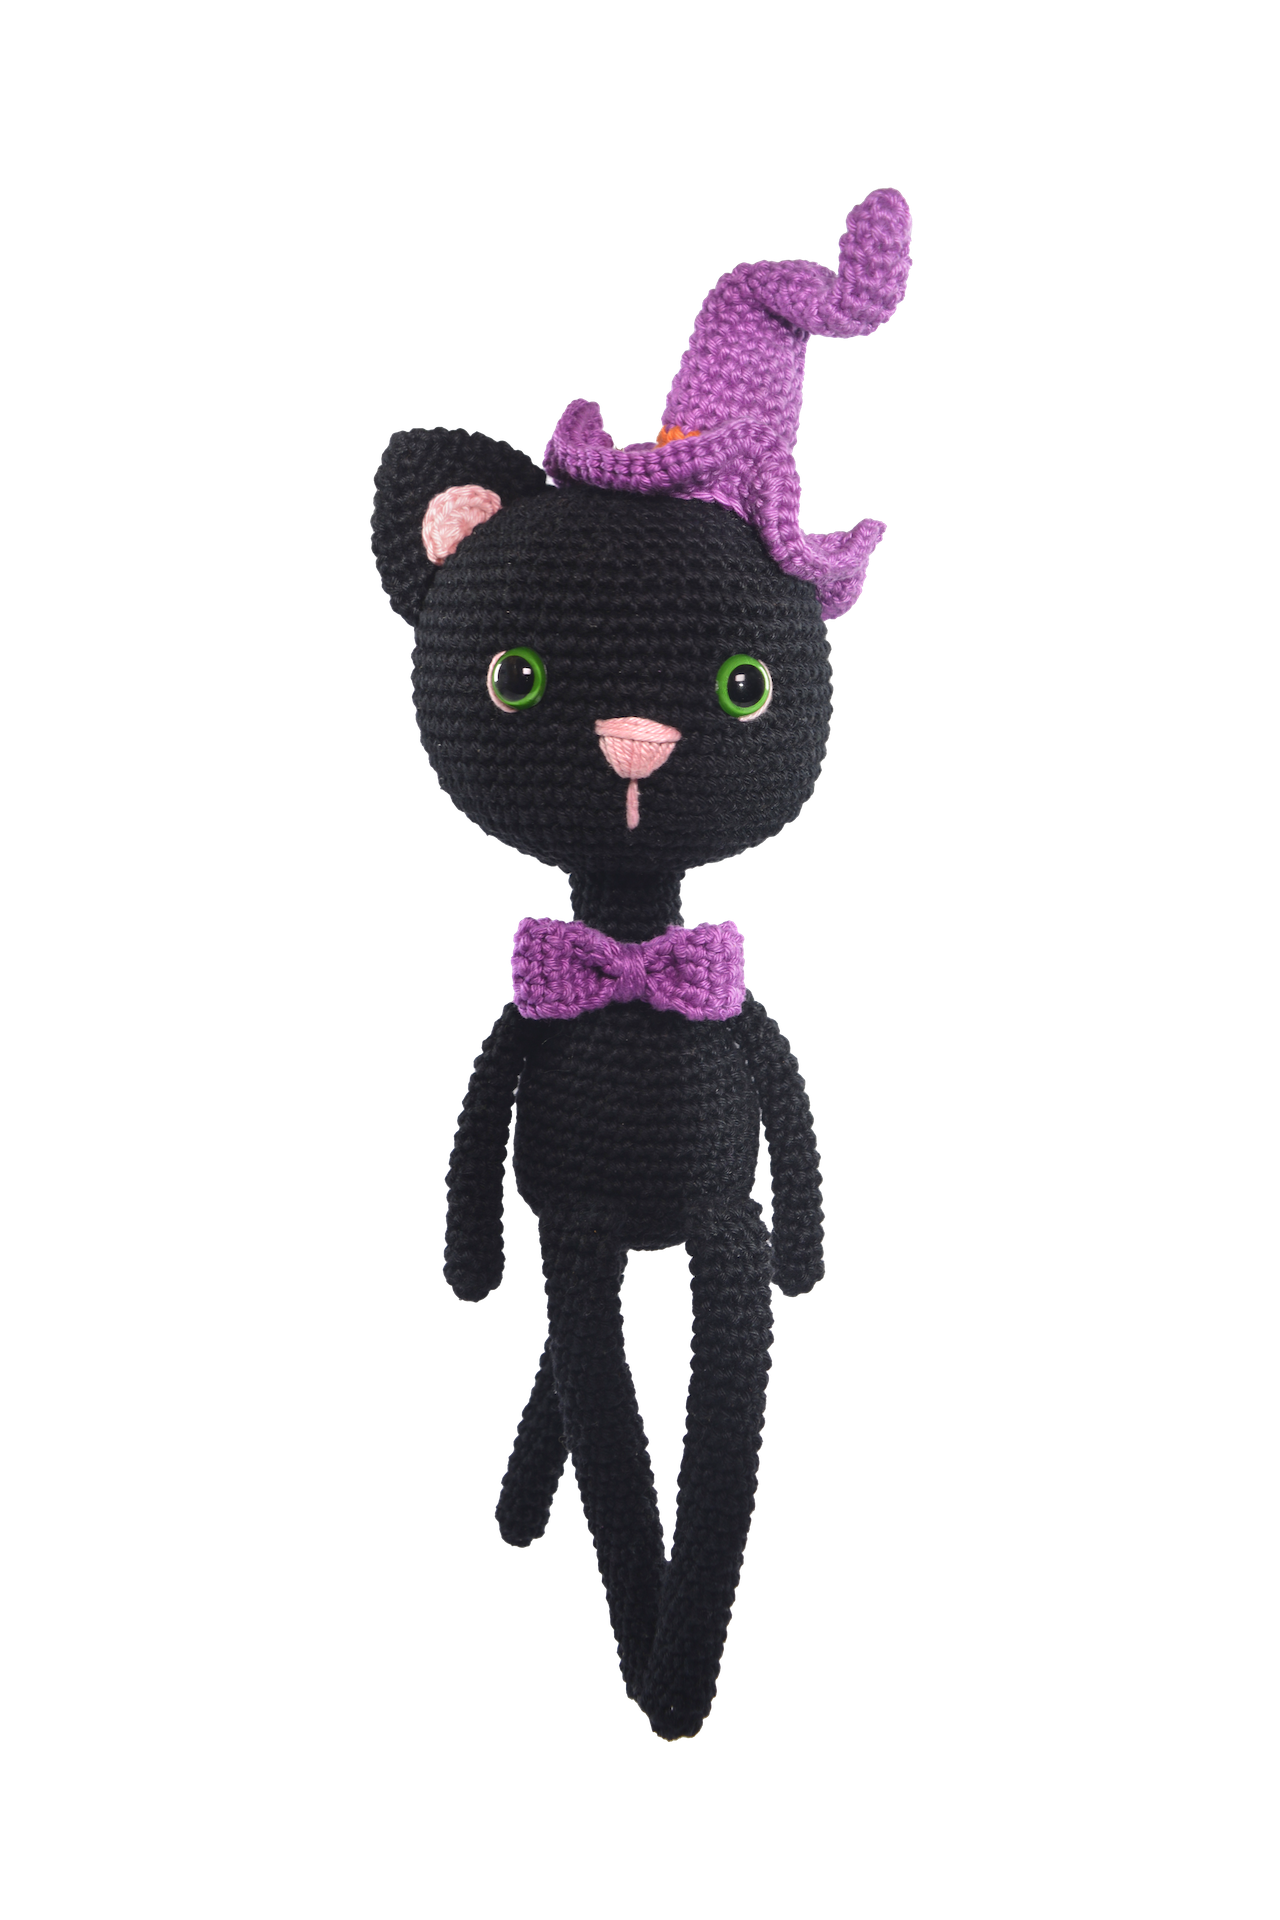 Halloween Crochet Amigurumi Animal Kits | Circulo